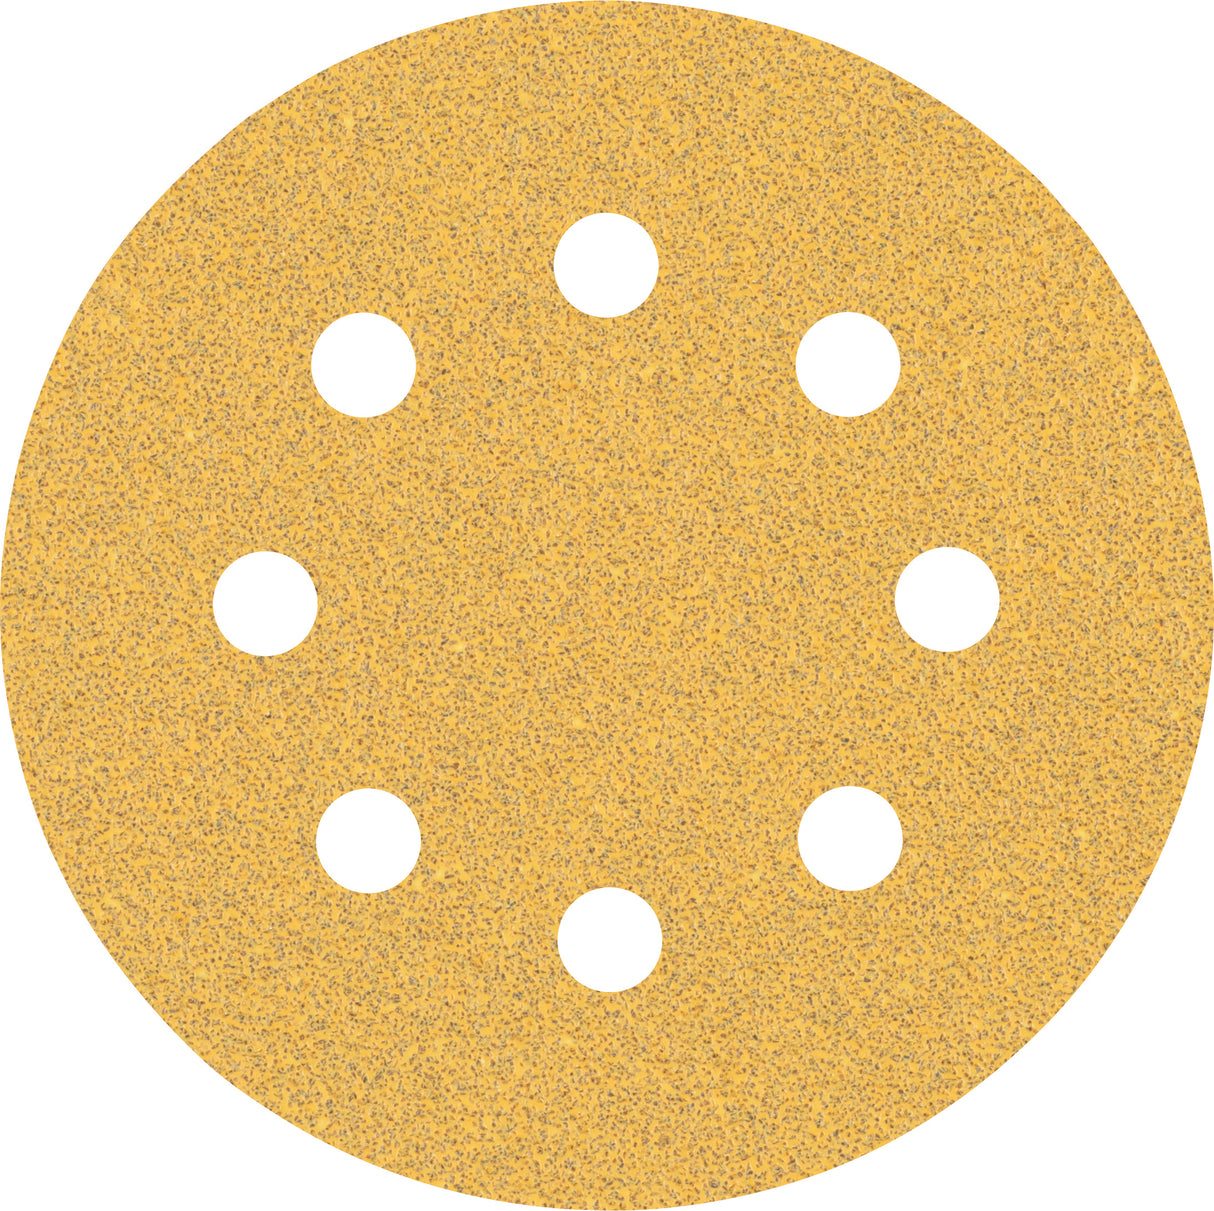 Bosch Professional Expert C470 Sandpaper - 115mm, 8 Holes, G 60  for Random Orbital Sanders